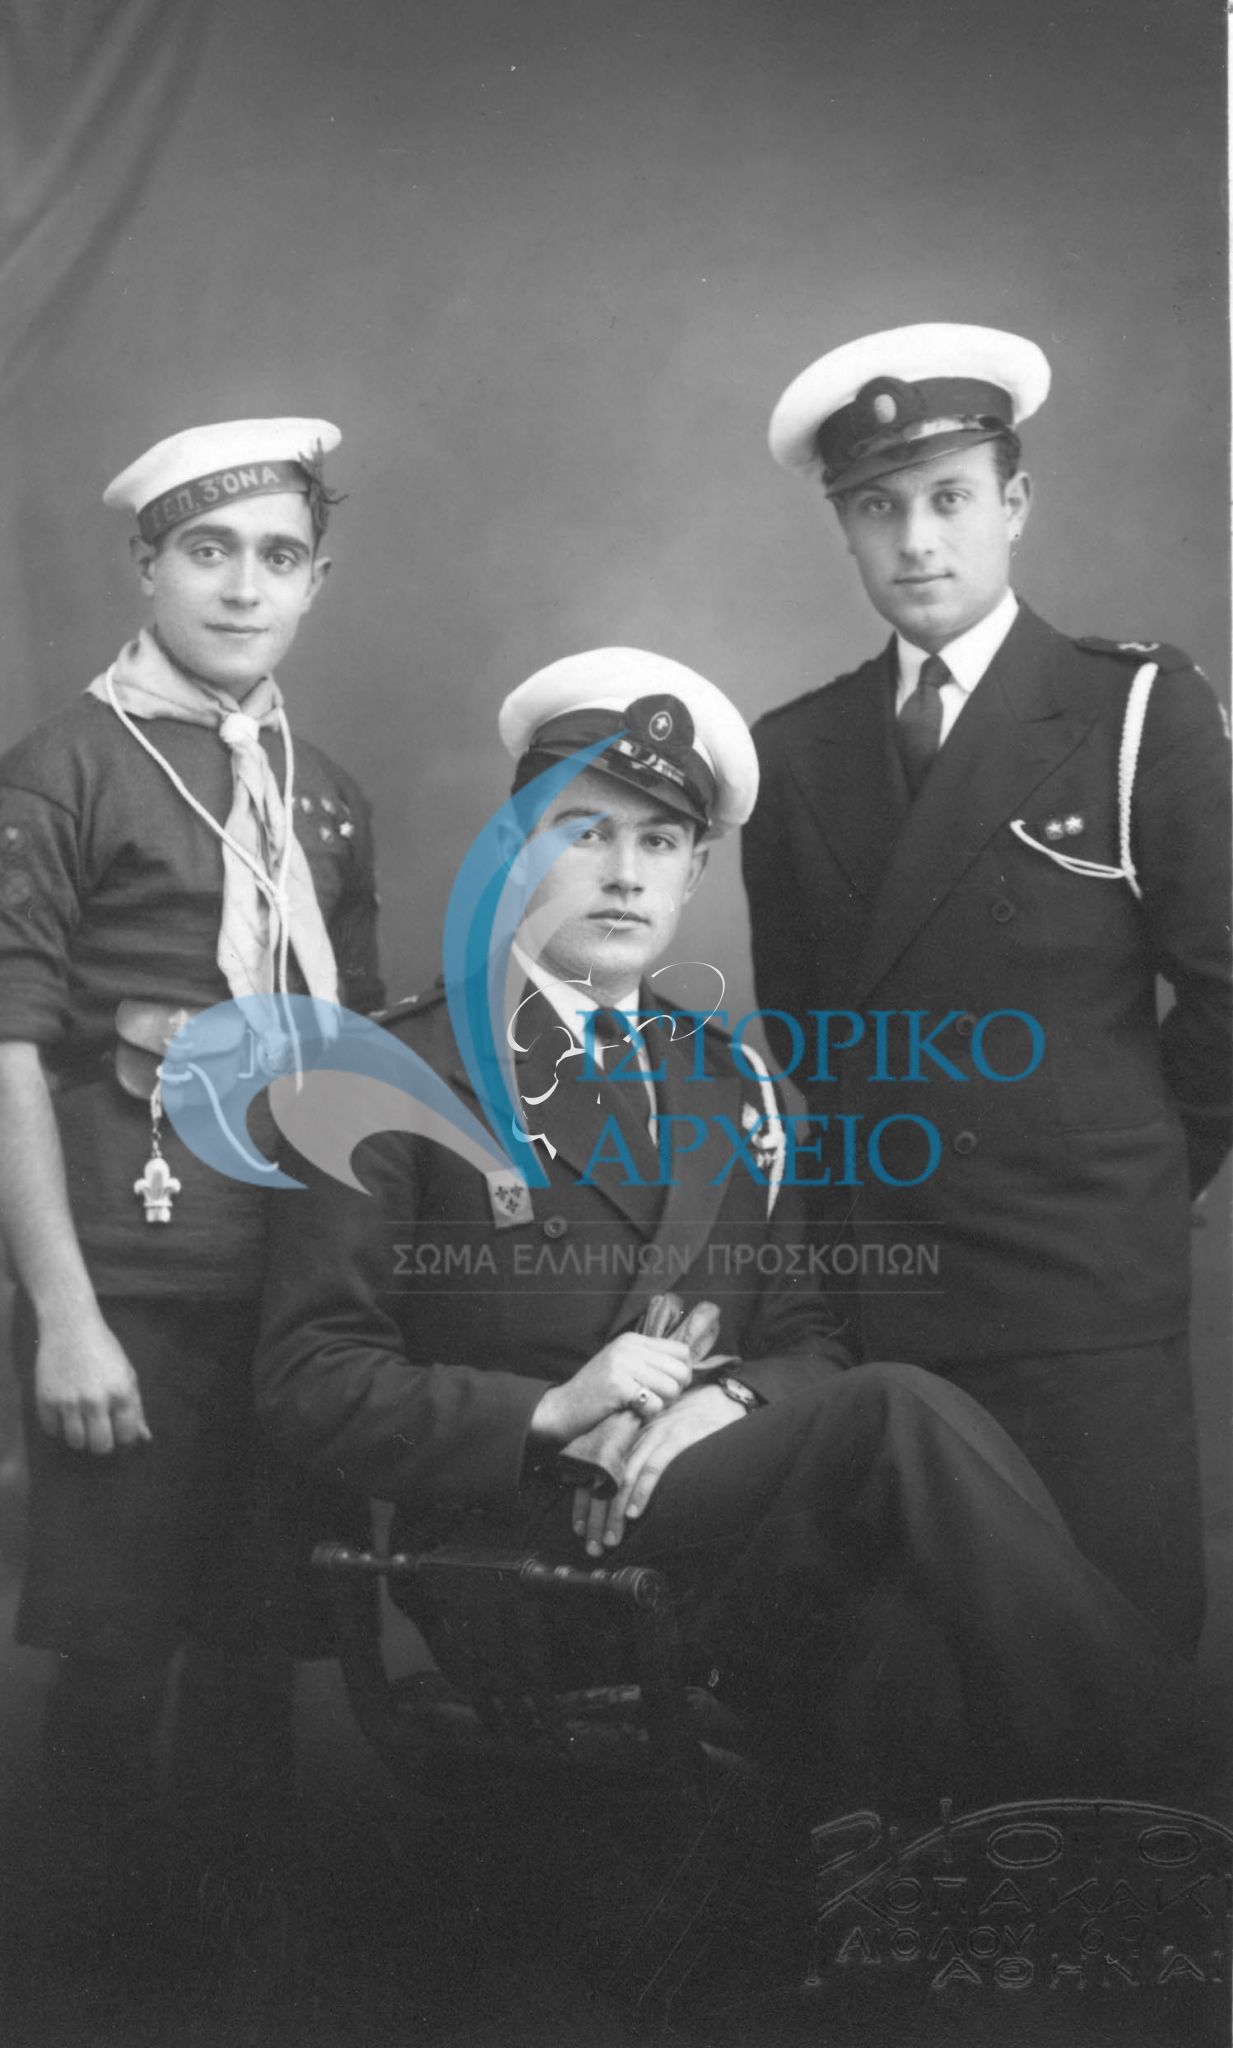 Οι υπαρχηγοί της 3ης Ομάδας Ναυτοπροσκόπων Αθηνών Εμμ. Κόντης, Γ. Αρμάος και Ν. Μαρουλάκης σε φωτογραφία που είχαν αφιερώσει στο Αθ. Λευκαδίτη το 1935.